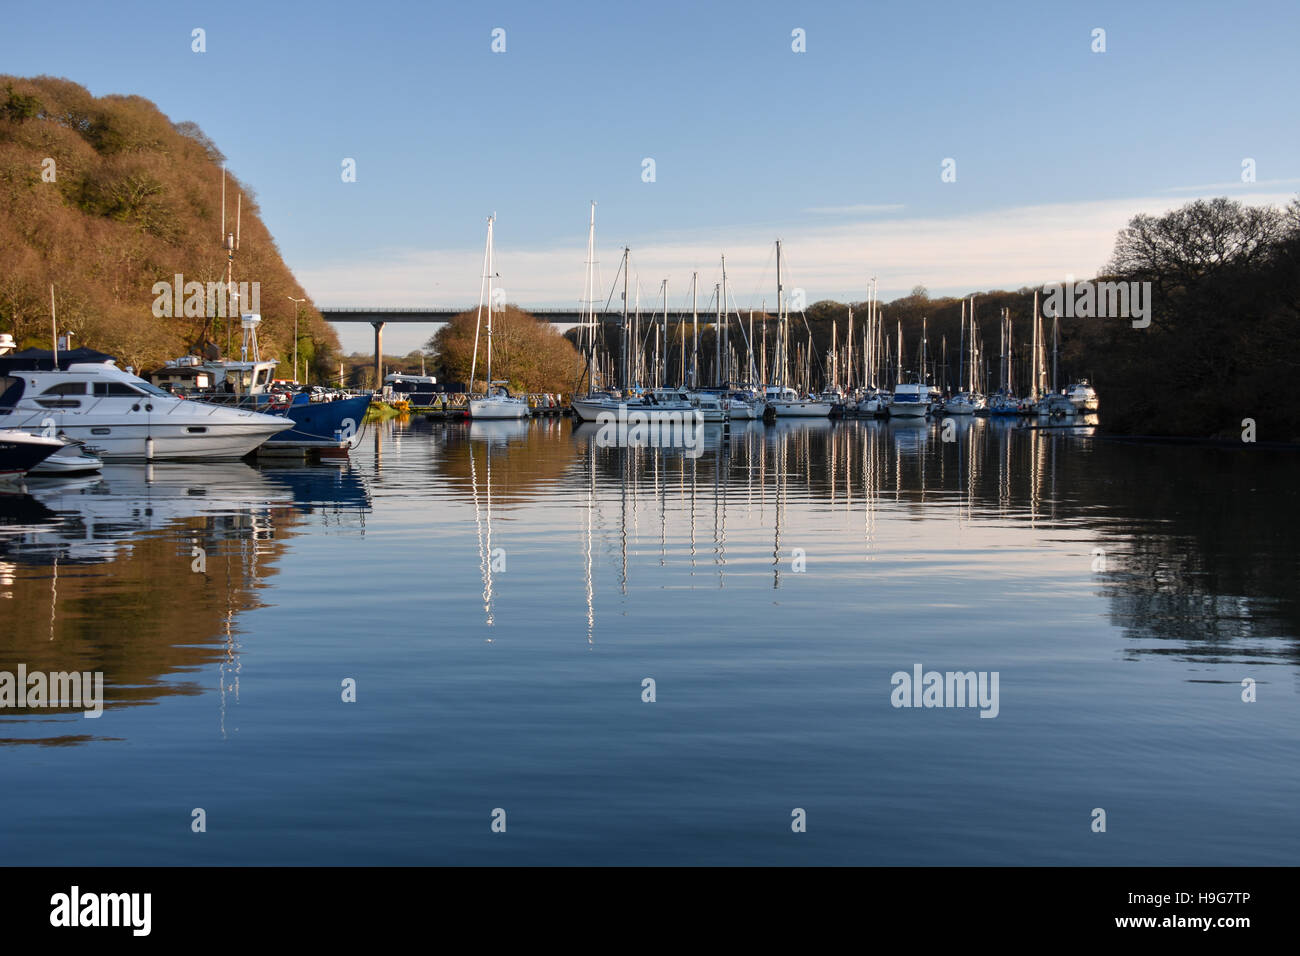 Reflétant des bateaux dans l'eau au port de plaisance de neyland bassin supérieur sur une belle journée avec un ciel bleu avec le Cleddau Bridge Banque D'Images